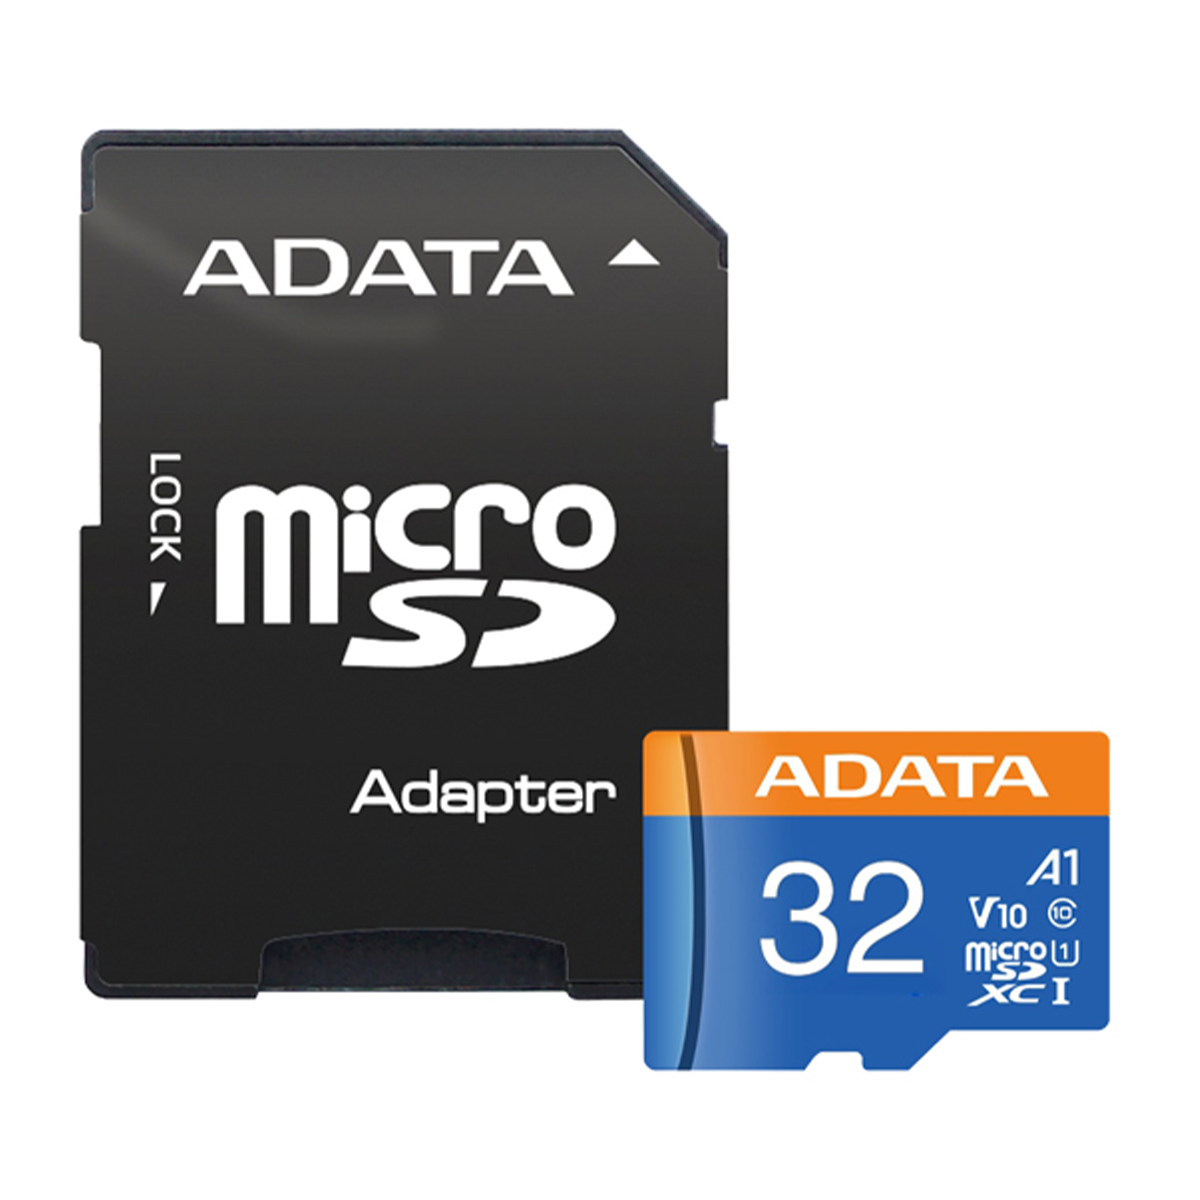 کارت حافظه microSDXC ای دیتا مدل Premier V10 A1 کلاس 10 استاندارد UHS-I سرعت 100MBps ظرفیت 32 گیگابایت به همراه آداپتور-آبی